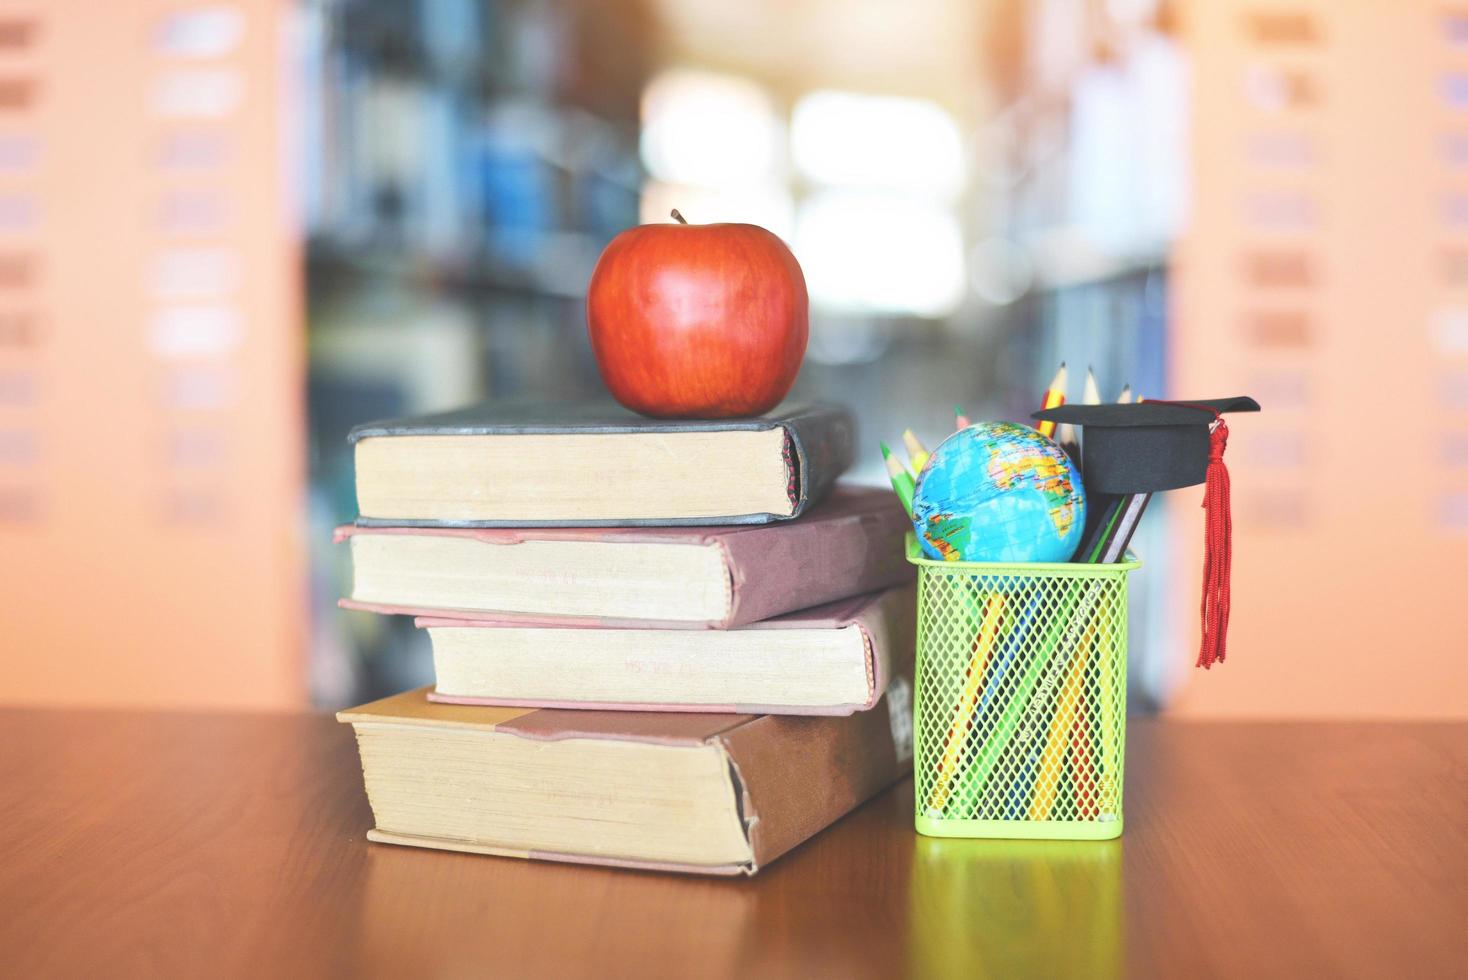 boeken op de tafel in de bibliotheek - onderwijs leren oude boekstapel en afstudeerdop op een etui met earth globe-model op houten bureau en wazige boekenplank kamerachtergrond met appel op boek foto